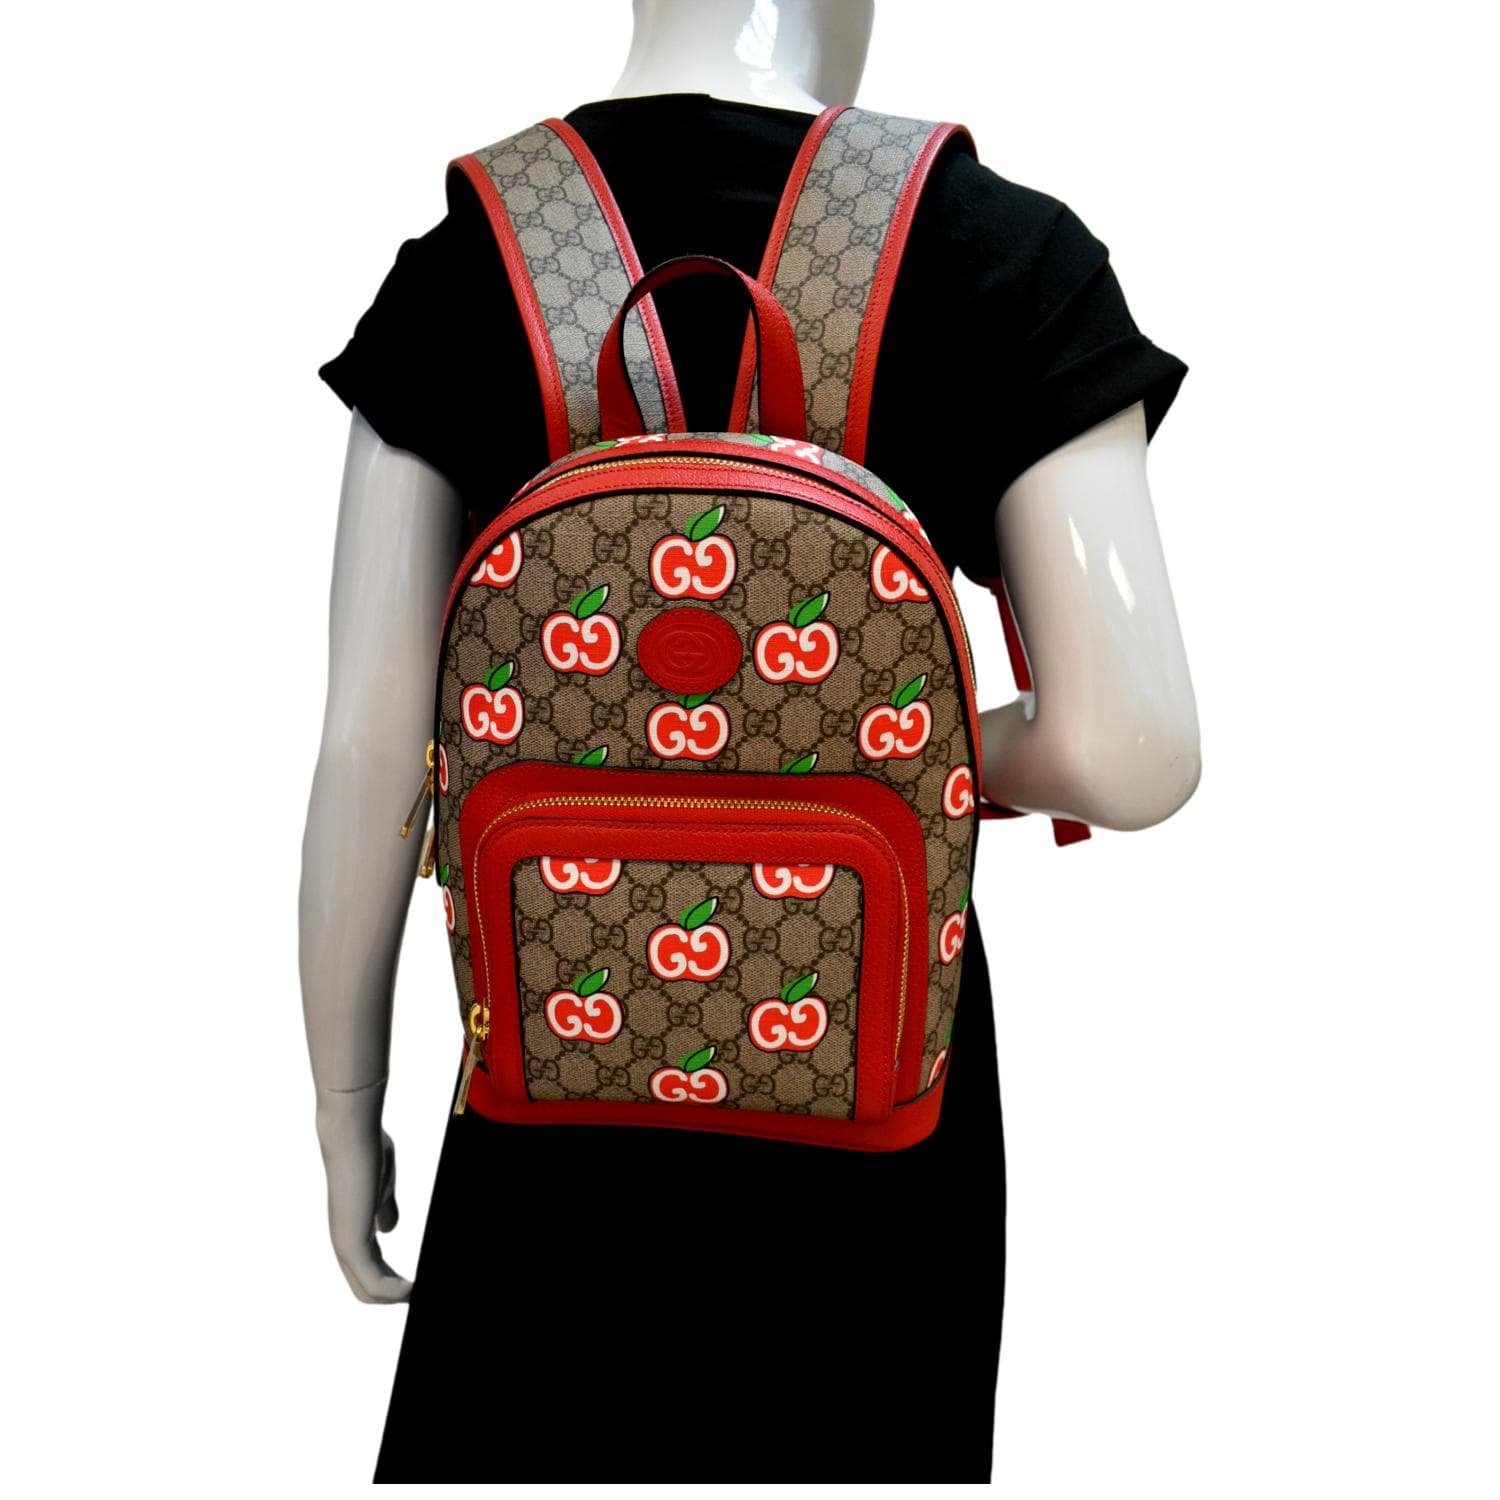 Gucci Black Leather Soho Chain Backpack QFB1ETLTKB003 | WGACA